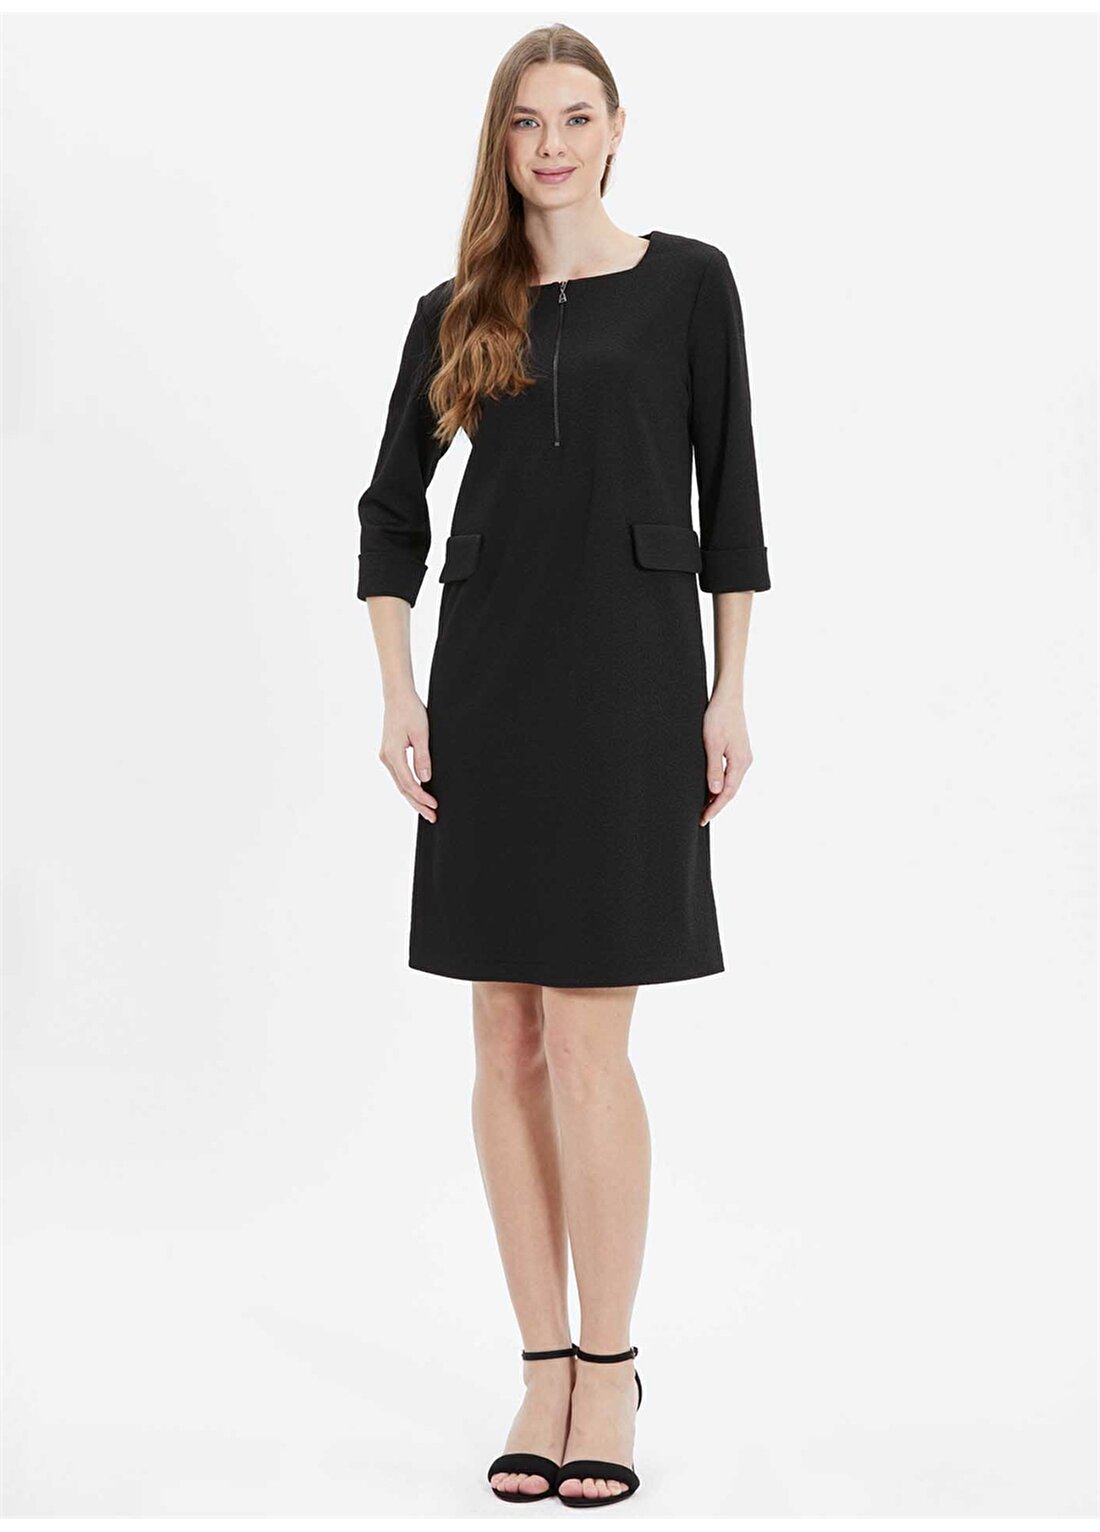 Selen U Yaka Desenli Siyah Standart Kadın Elbise 24YSL7470